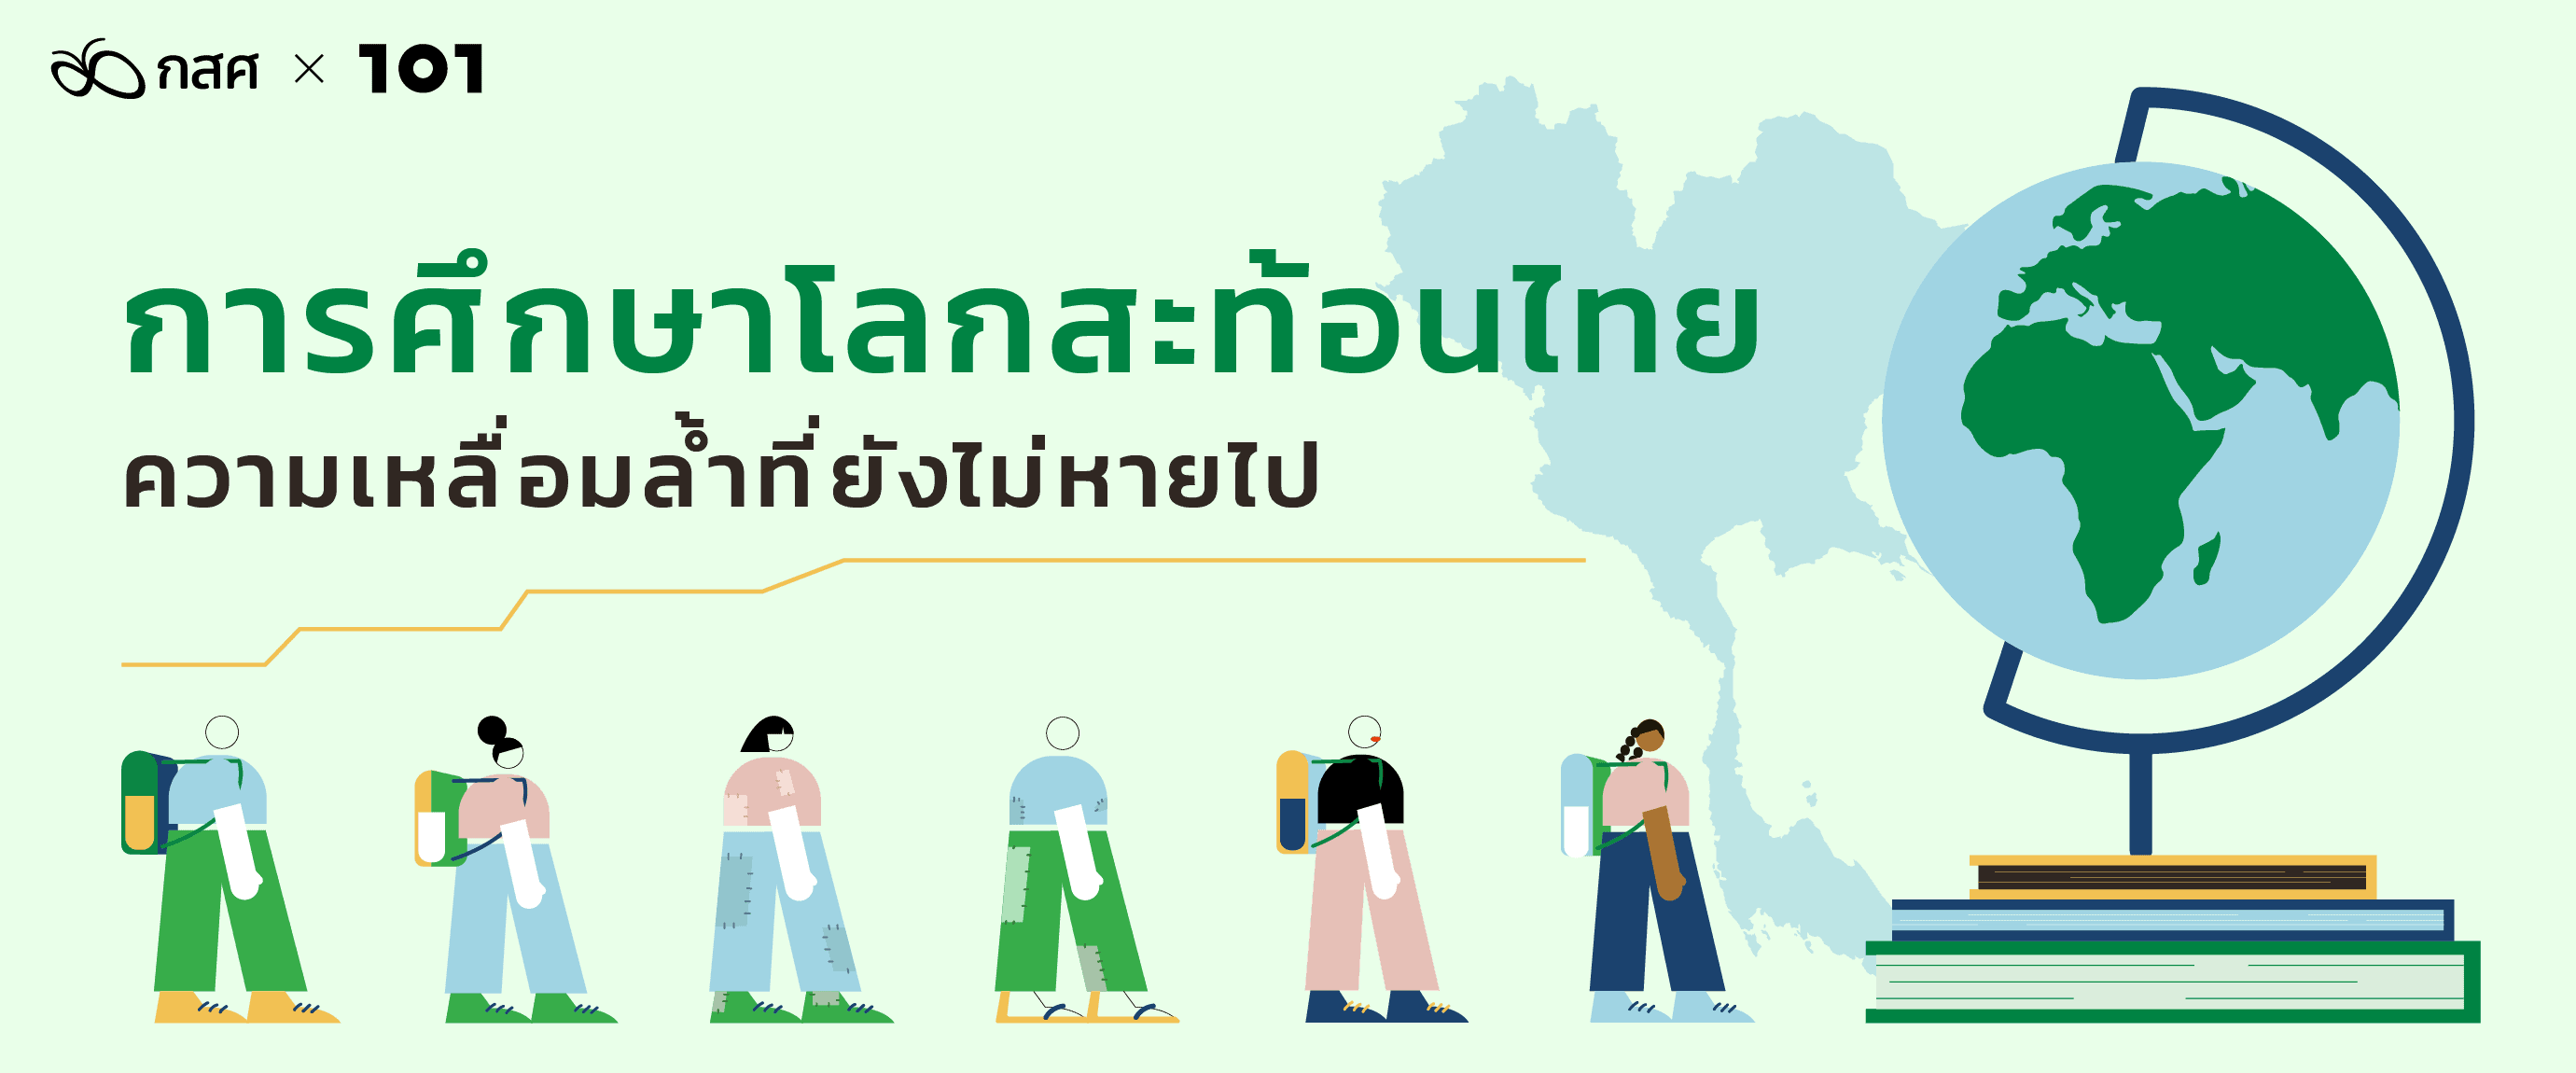 การศึกษาโลกสะท้อนไทย ความเหลื่อมล้ำที่ยังไม่หายไป